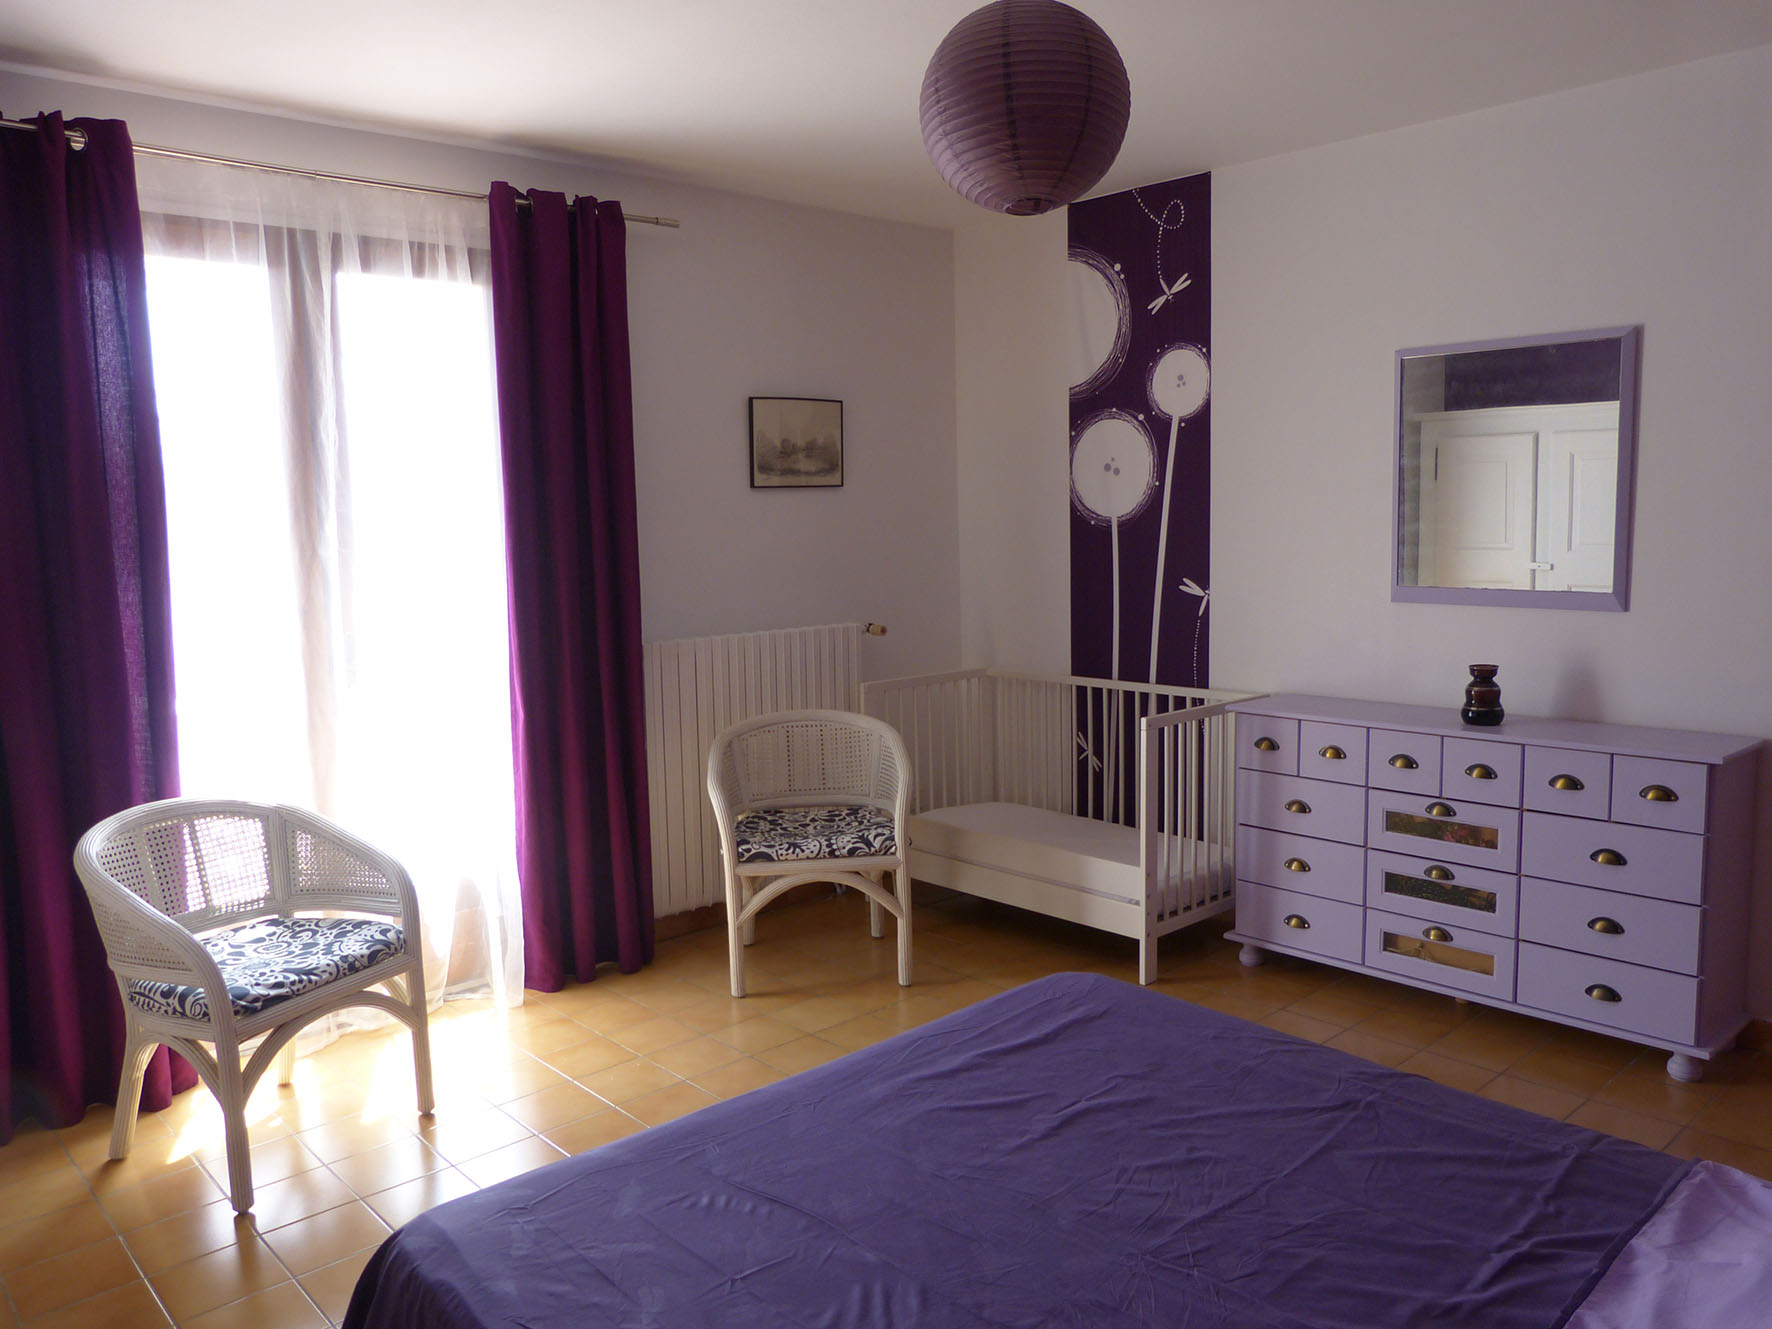 La chambre violette